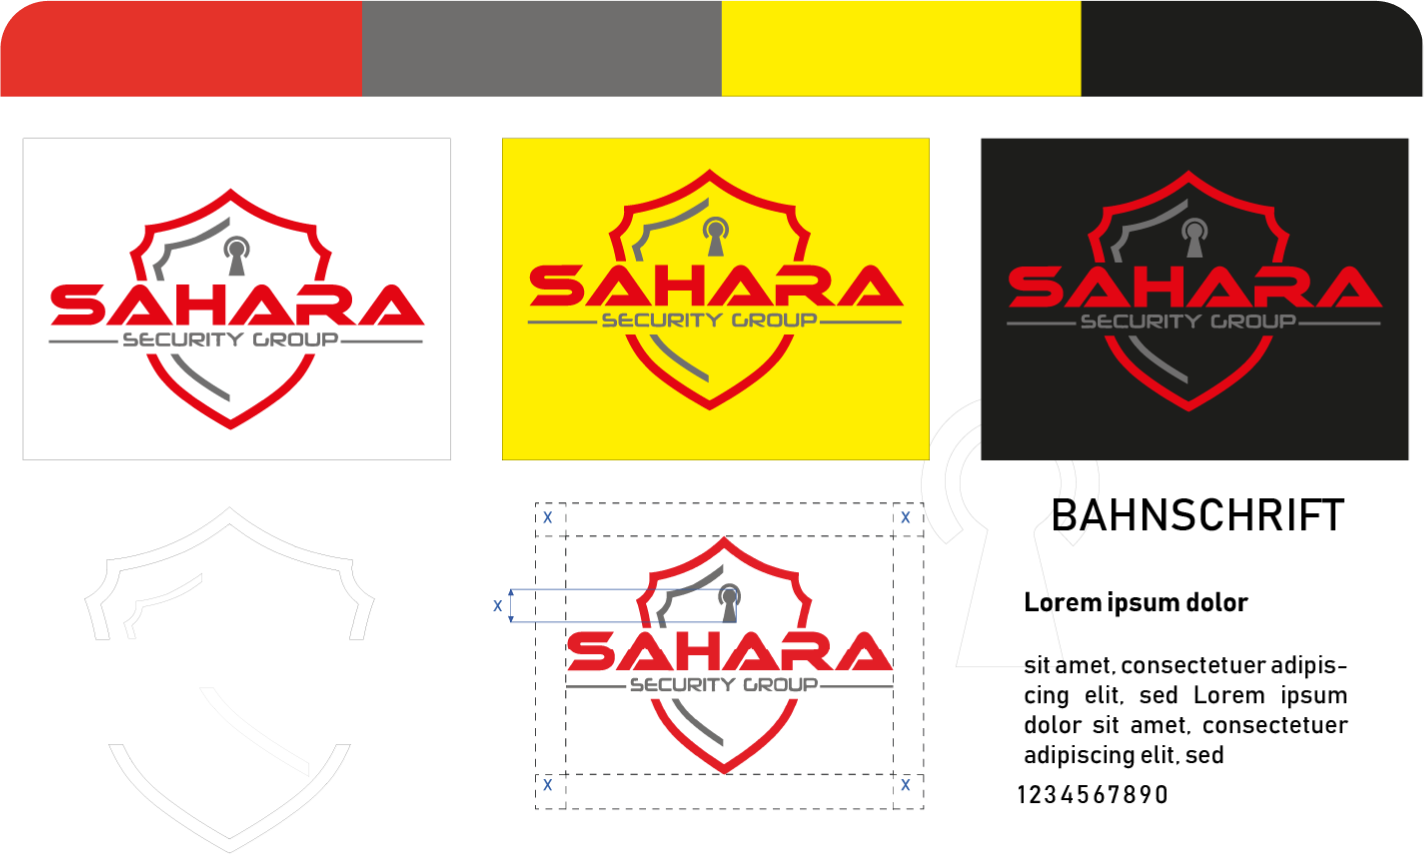 Sahara Security